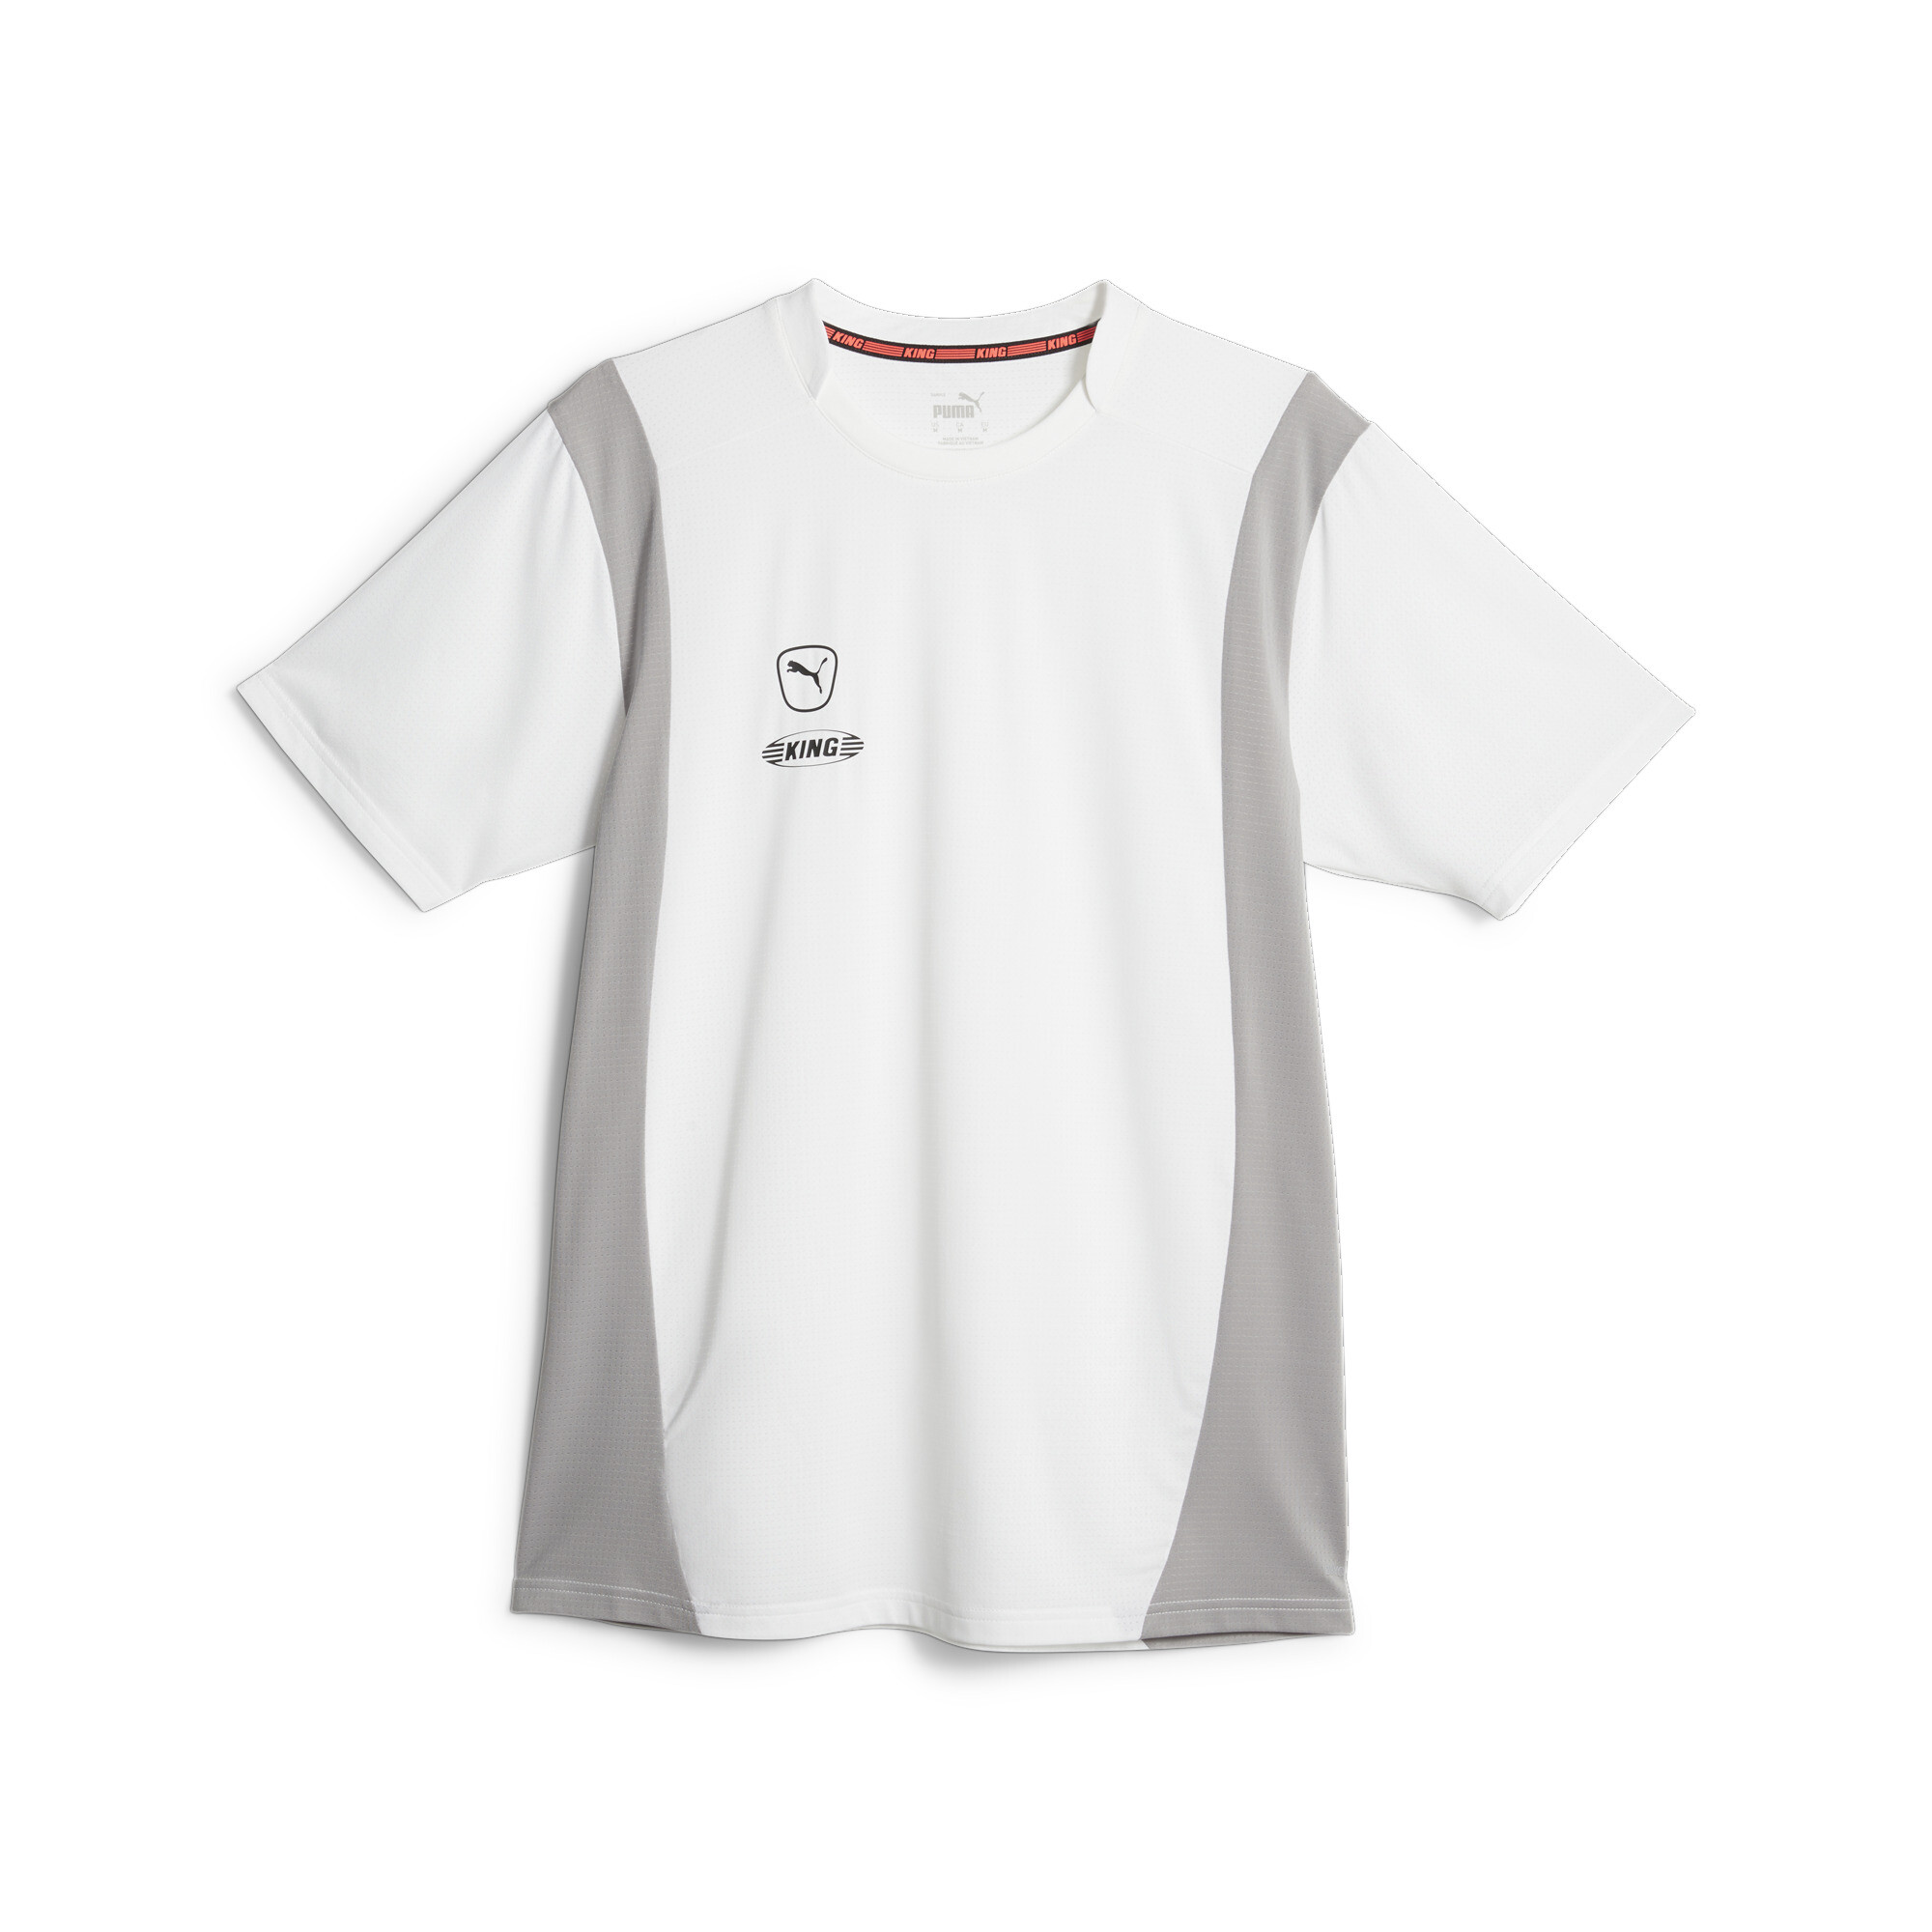 プーマ メンズ サッカー キング プロ Tシャツ メンズ PUMA White-Concrete Gray ｜PUMA.comの画像